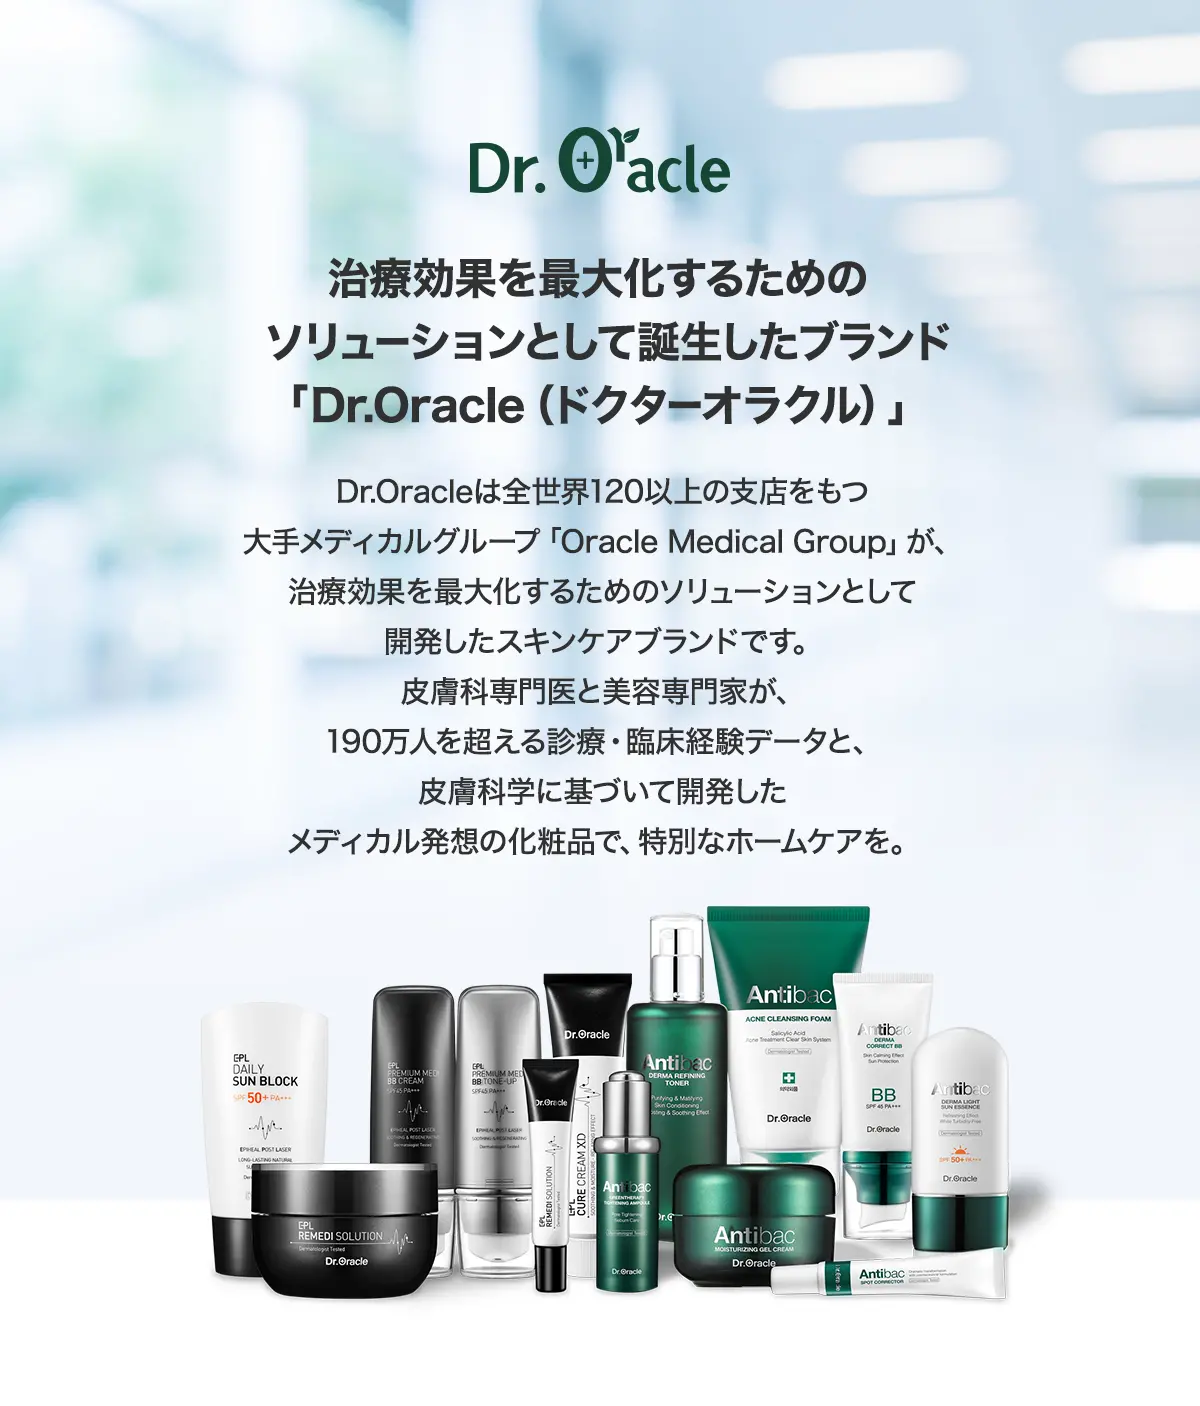 治療効果を最大化するためのソリューションとして誕生したブランド「Dr.Oracle（ドクターオラクル）」